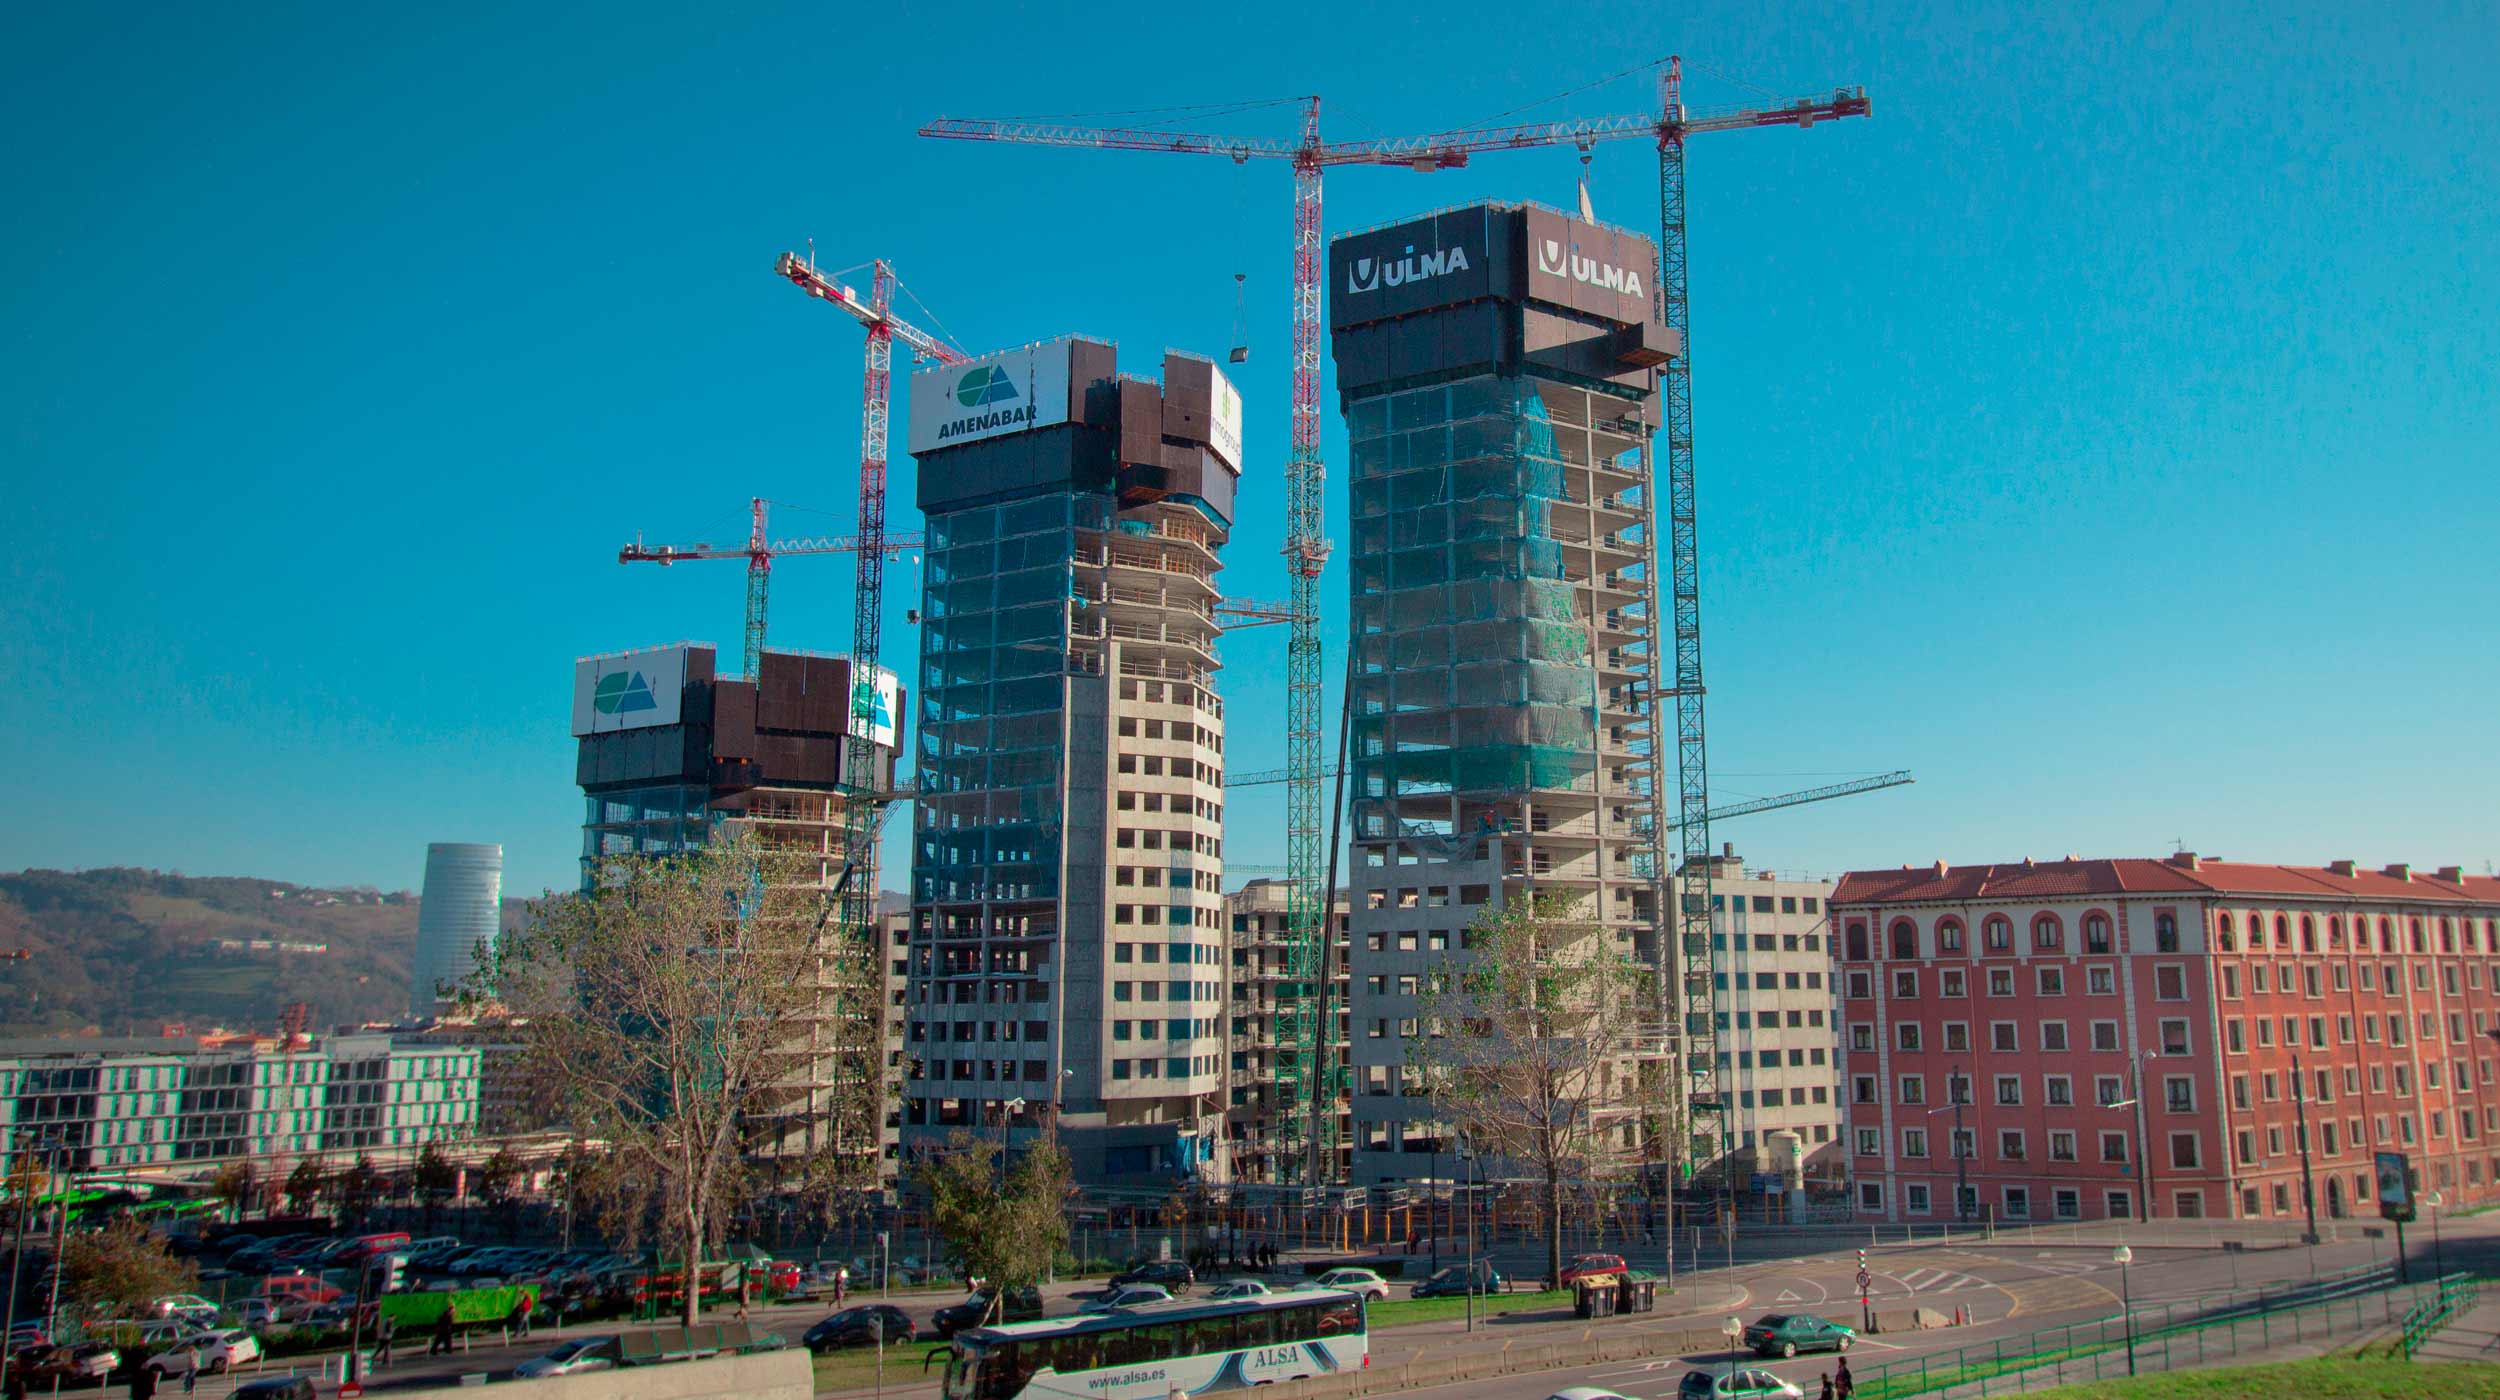 Projekt zagospodarowania przestrzeni miejskiej w nowej dzielnicy mieszkaniowej Garellano zlokalizowanej w samym centrum Bilbao.